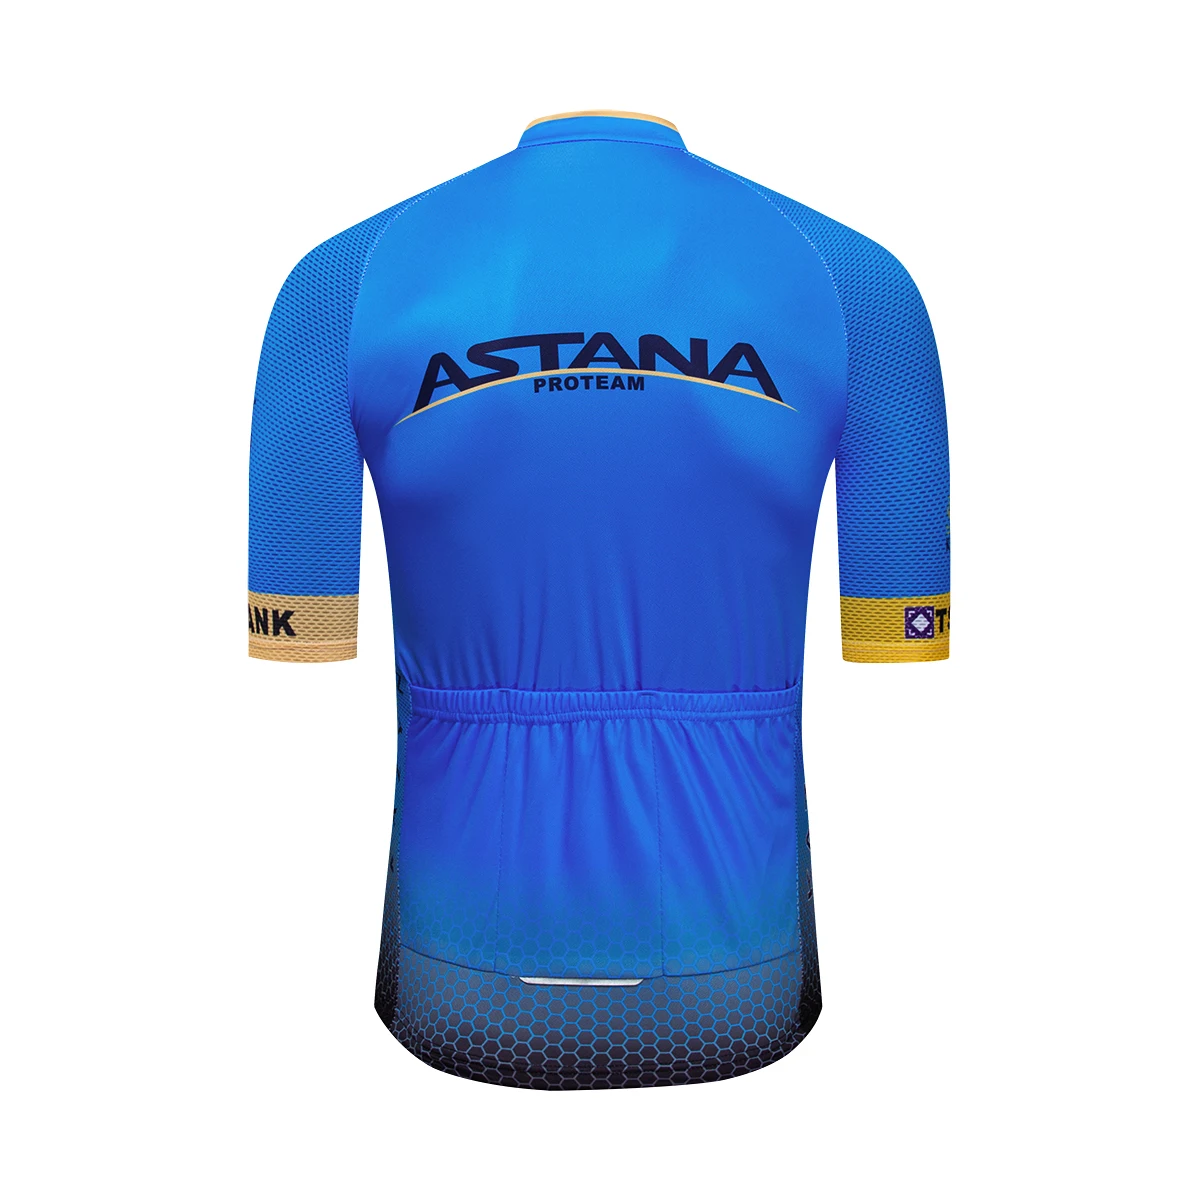 Astera STRAVA Велоспорт Джерси наборы велосипедная одежда короткий рукав костюм MTB велосипед Джерси 80% полиэстер Велосипедное трико одежда M